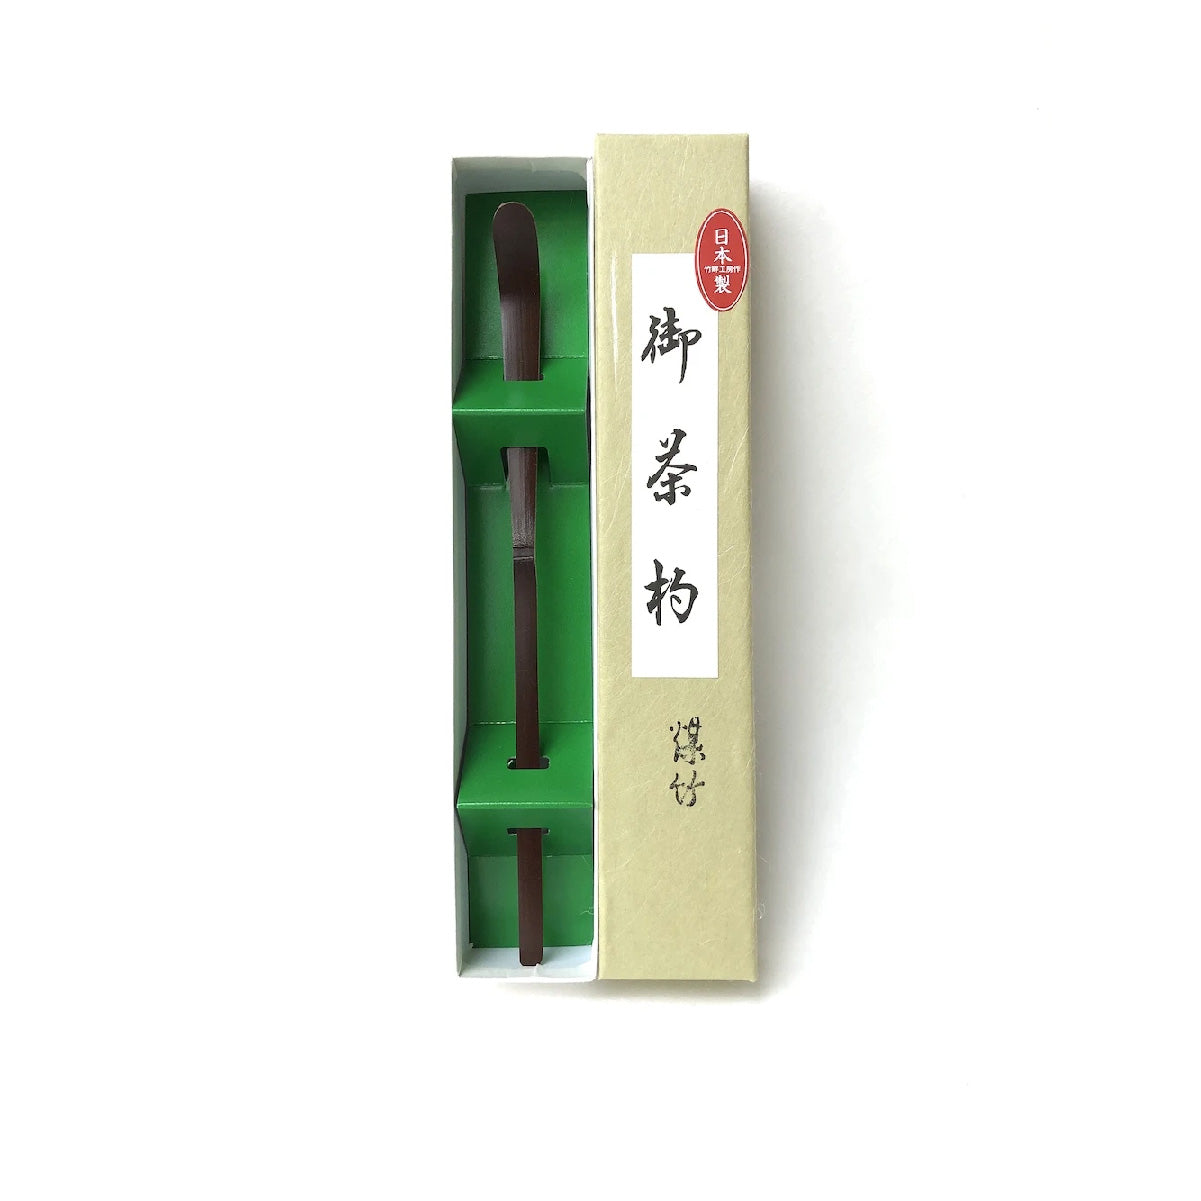 Matsu Kaze Tea - Chashaku Susudake(Brown, w/box)